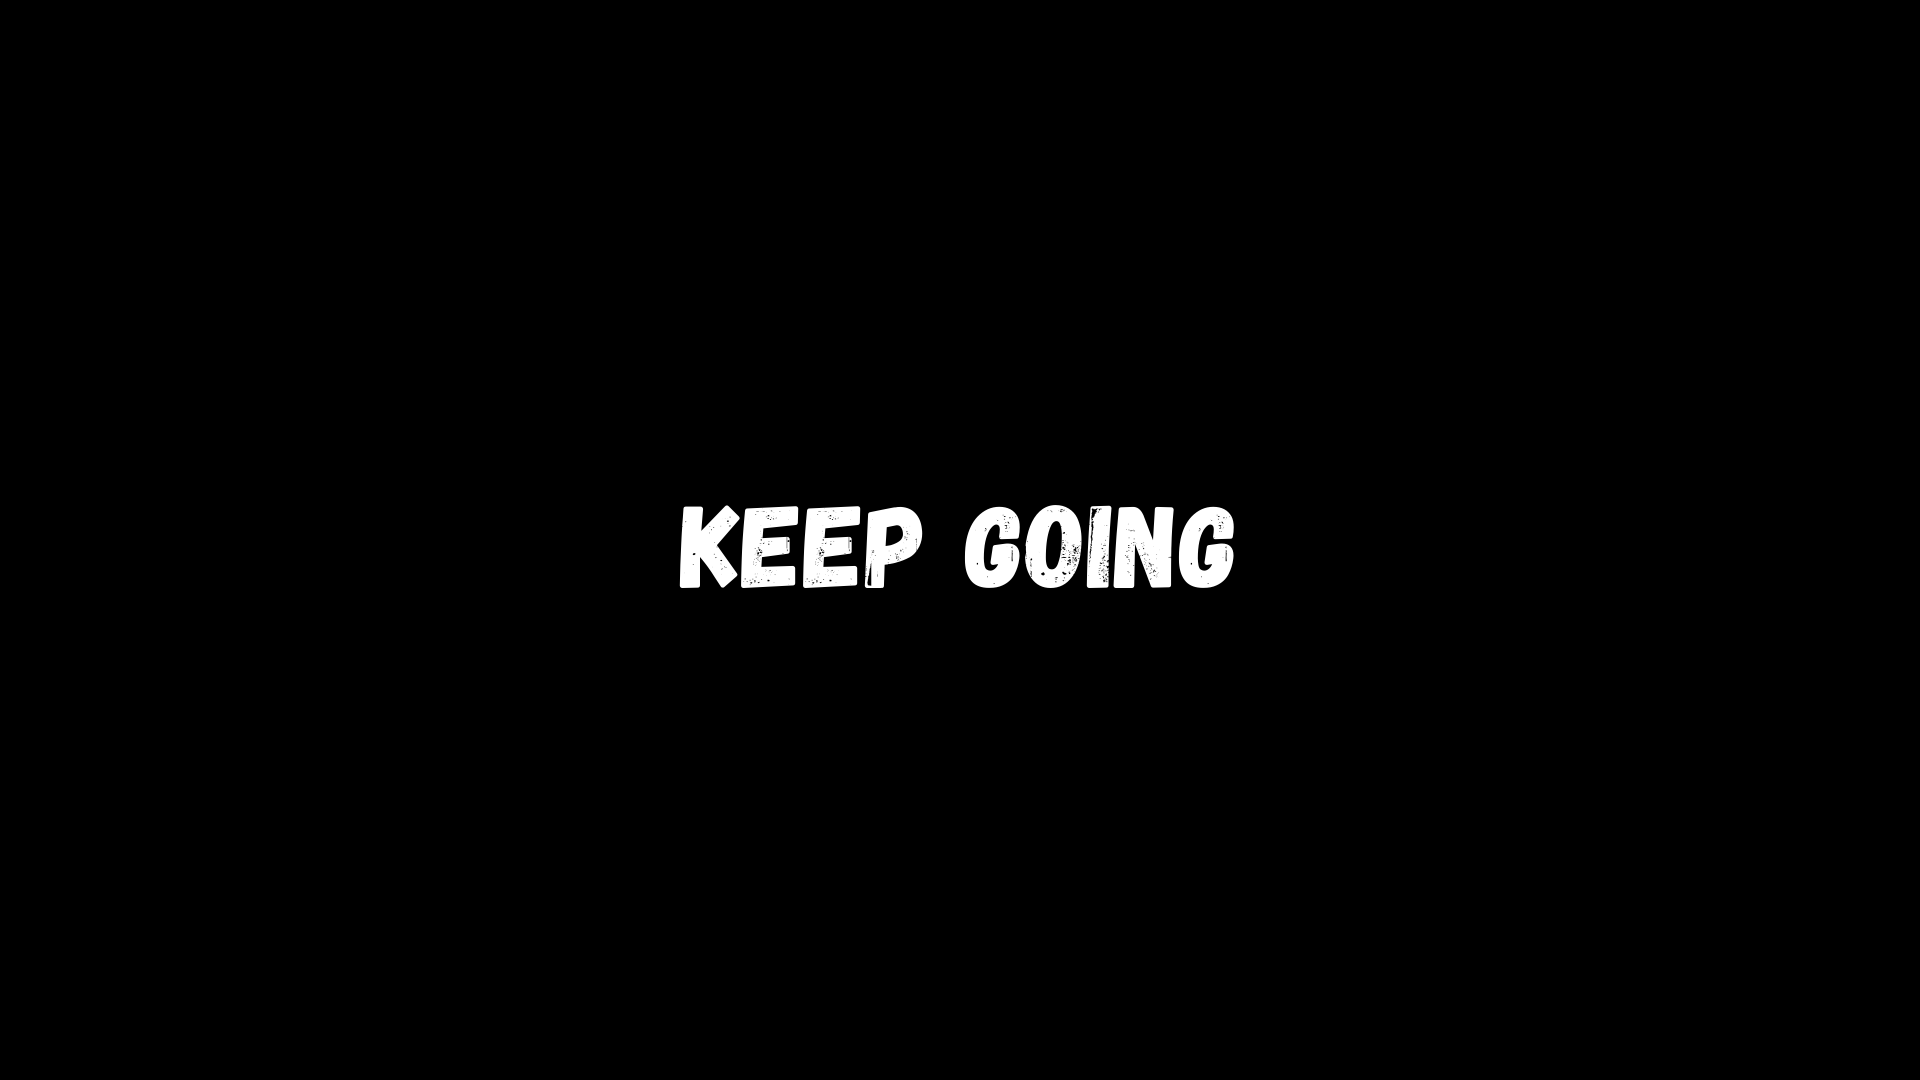 Keep Going by Fonte de Motivação